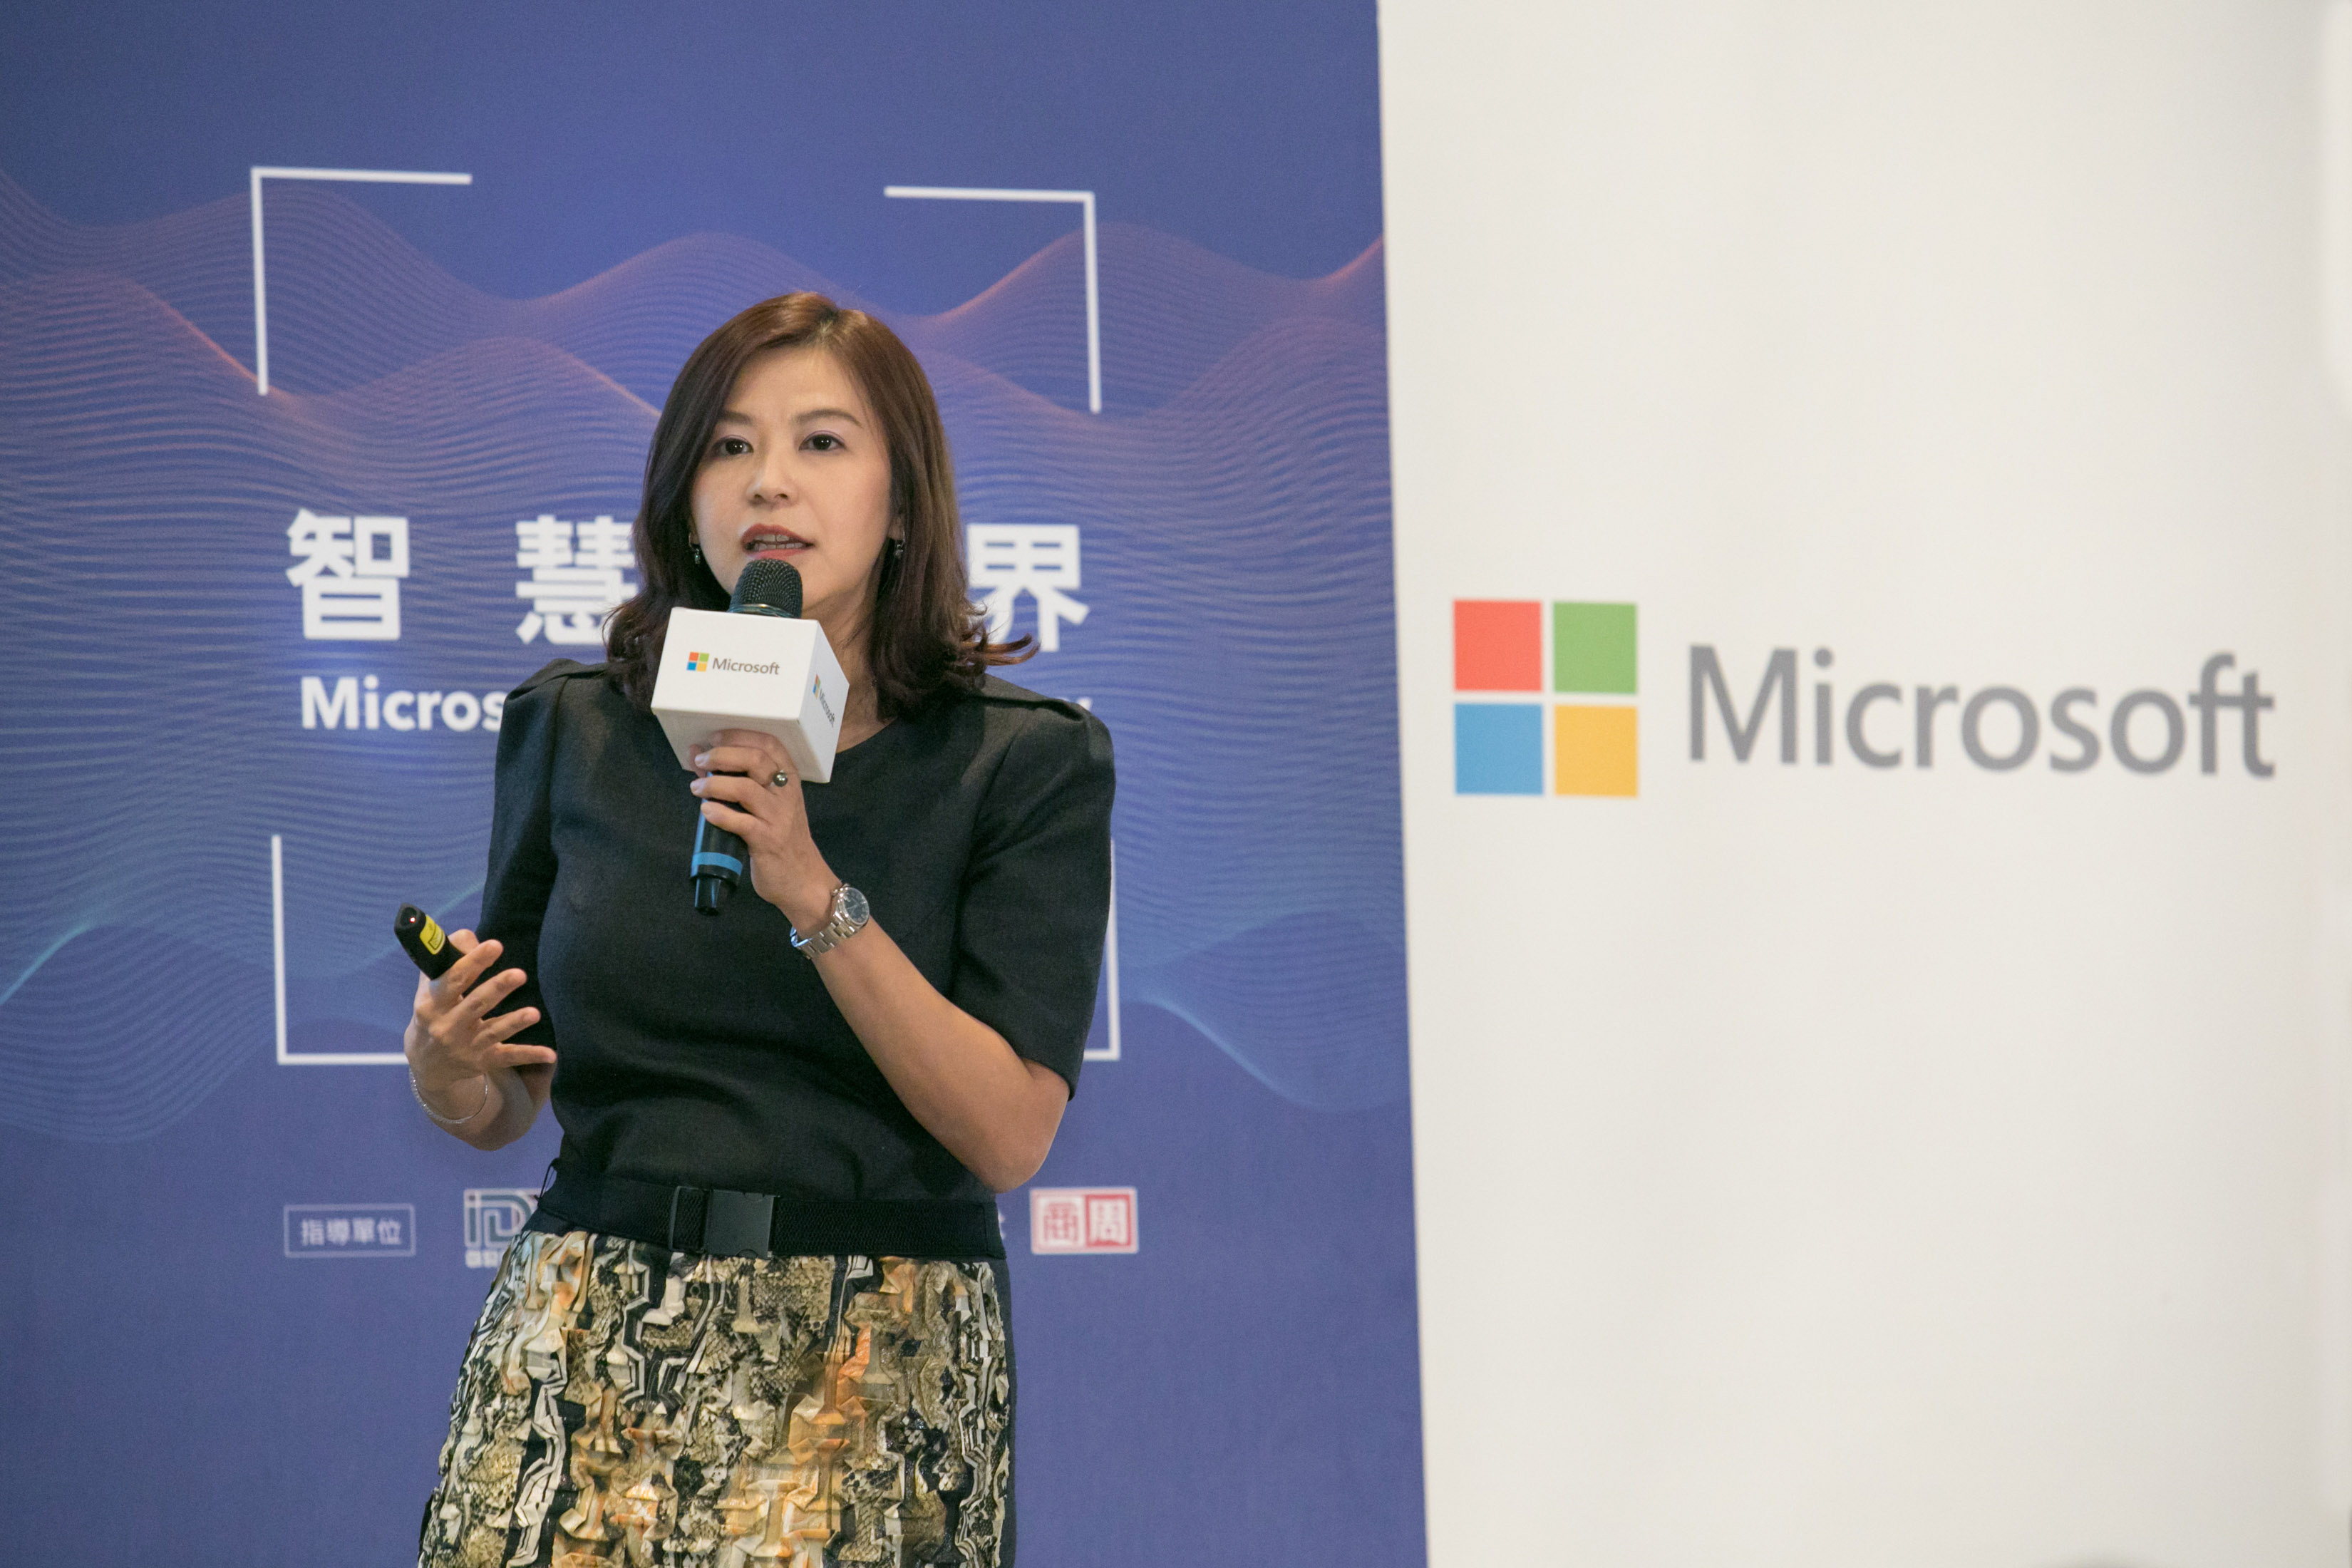 【新聞照片一】台灣微軟號召橫跨各大產業的在地合作夥伴與客戶，正式啟動「AI 100計畫」。台灣微軟首席營運長何虹博士表示，微軟承諾將提供技術資源、專家團隊、以及整個夥伴生態系的扶持，加速台灣產業全面數位轉型。